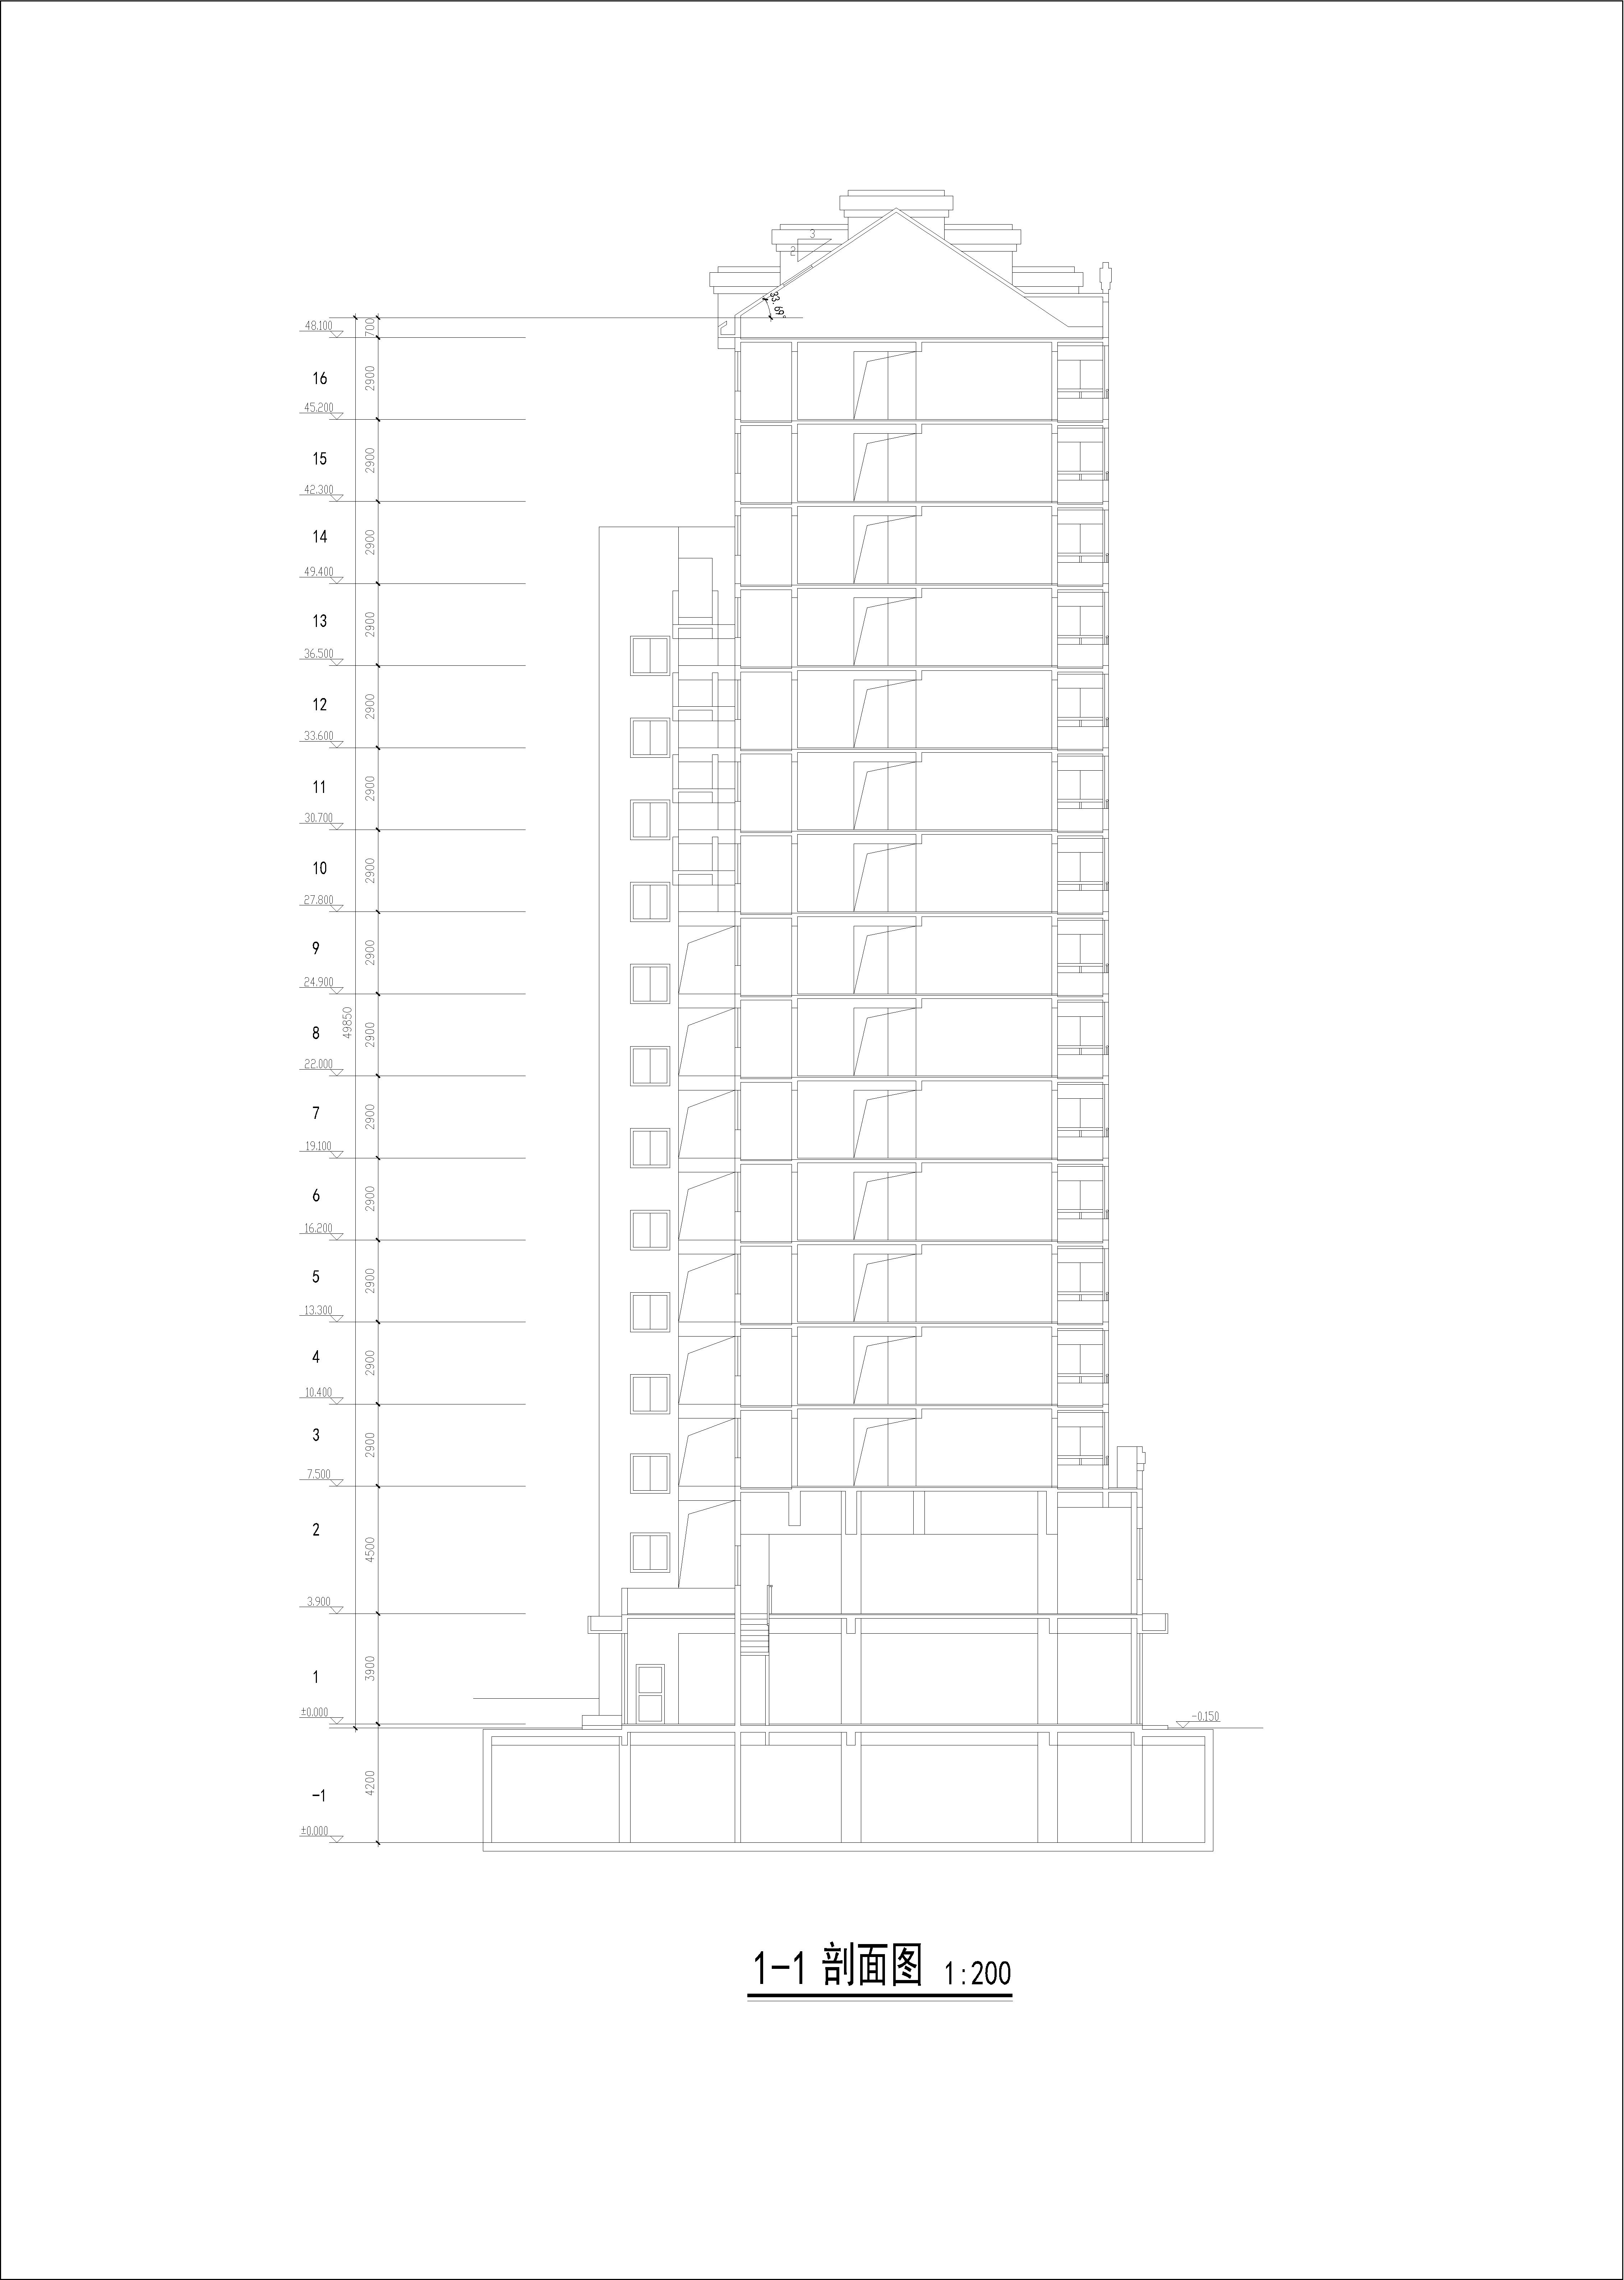 高层公寓初步设计方案CAD